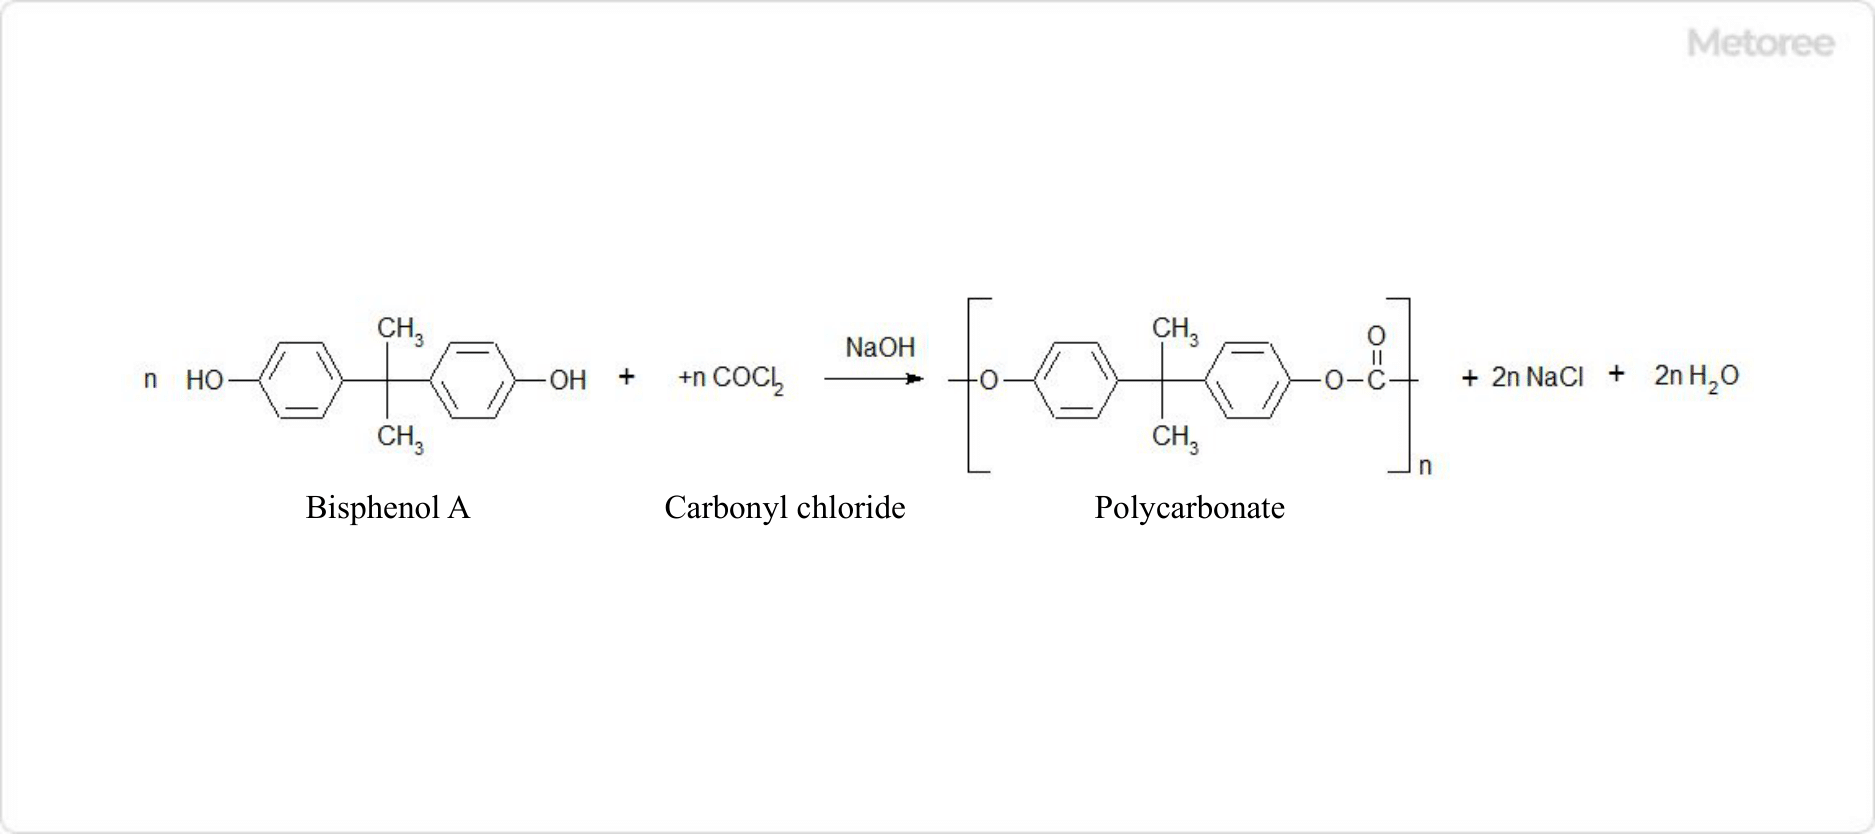 Figure 1. Polycarbonate Reaction Formula